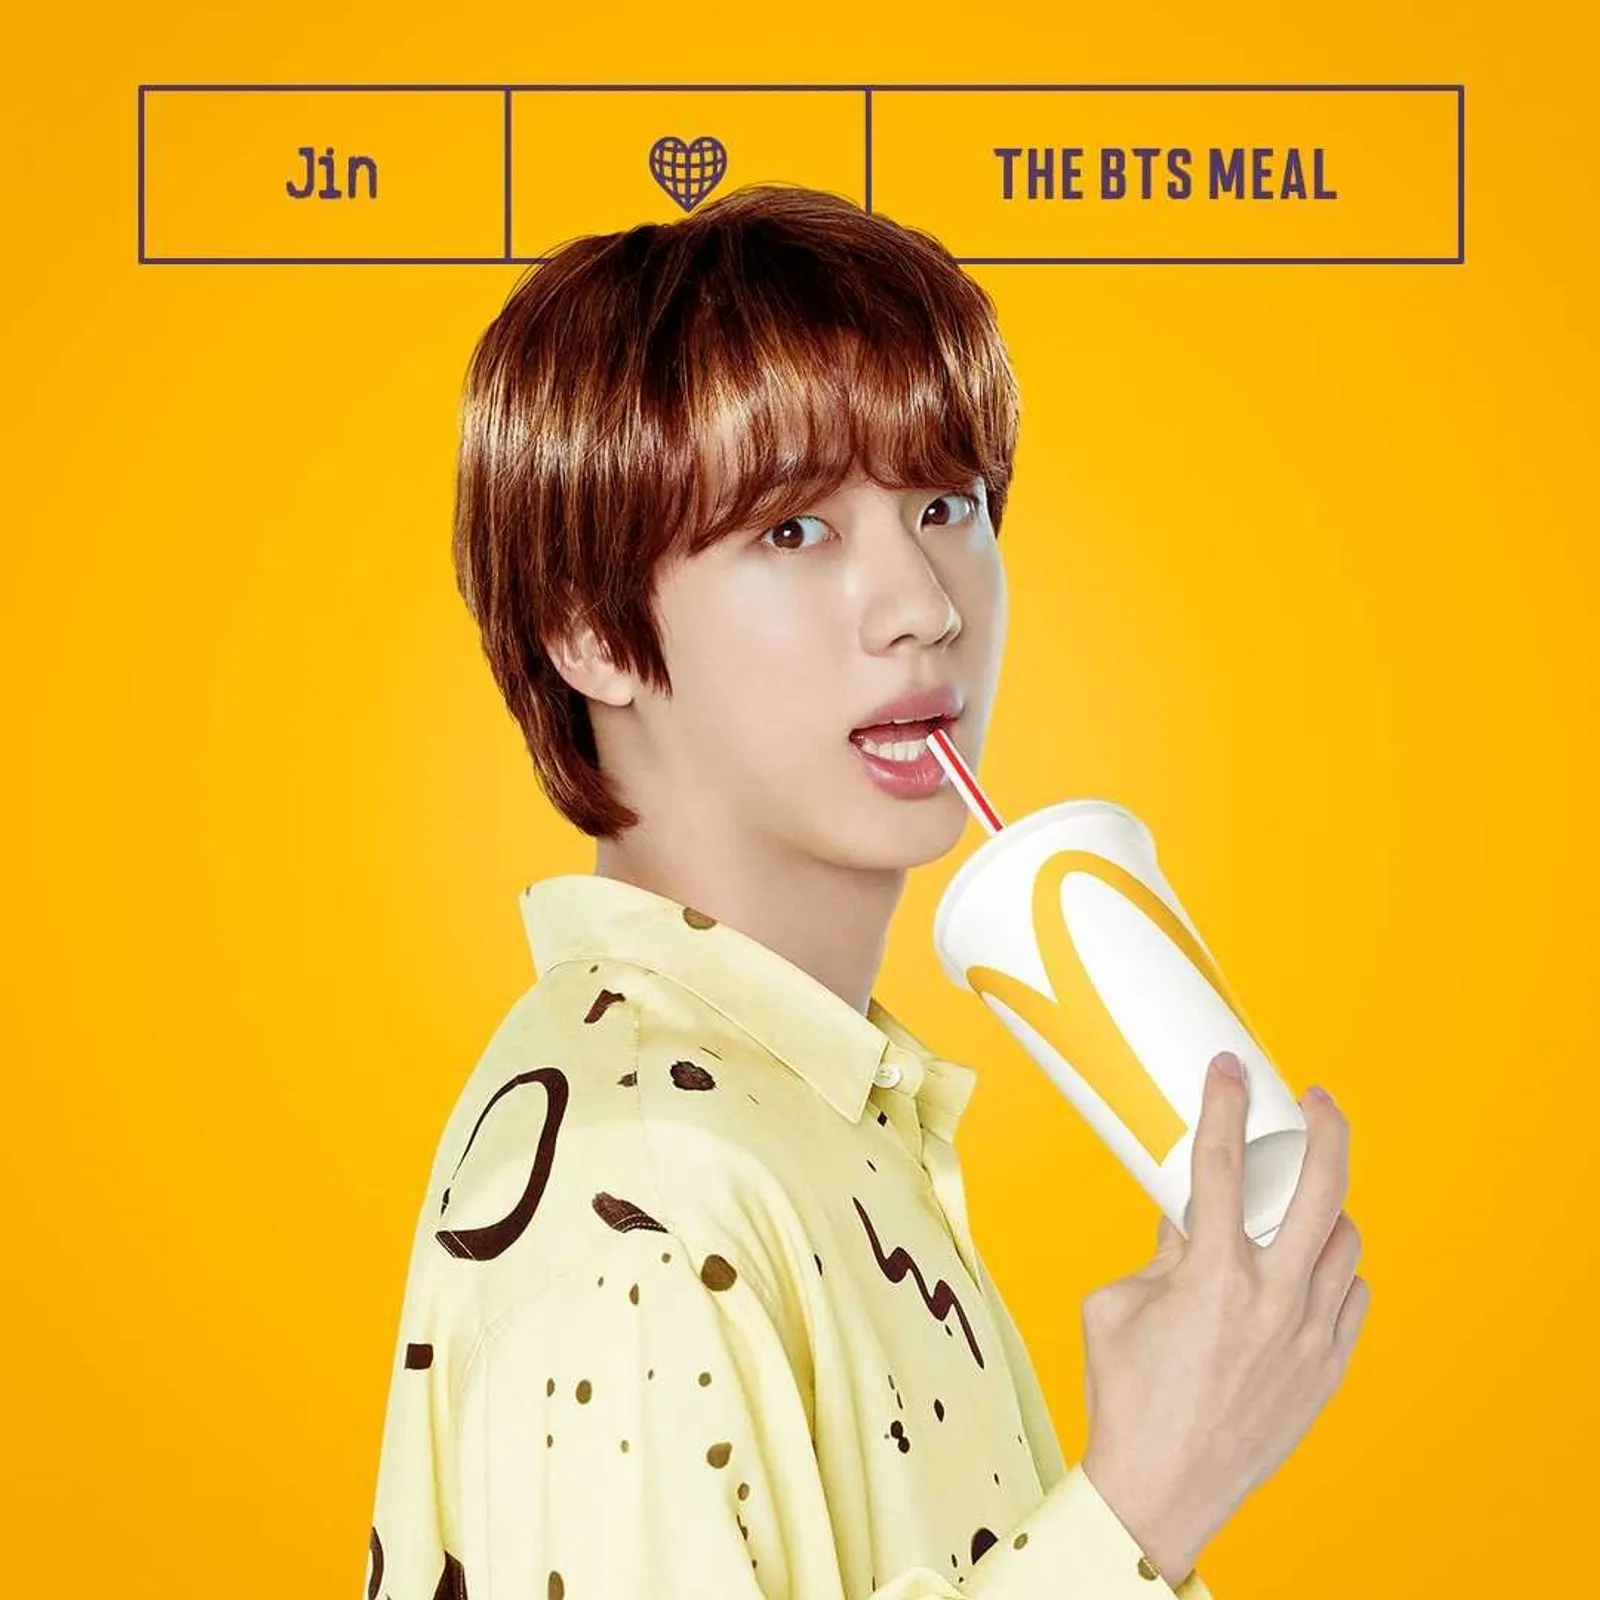 Bocoran Harga Pakaian Member BTS untuk Iklan McDonald's BTS Meal